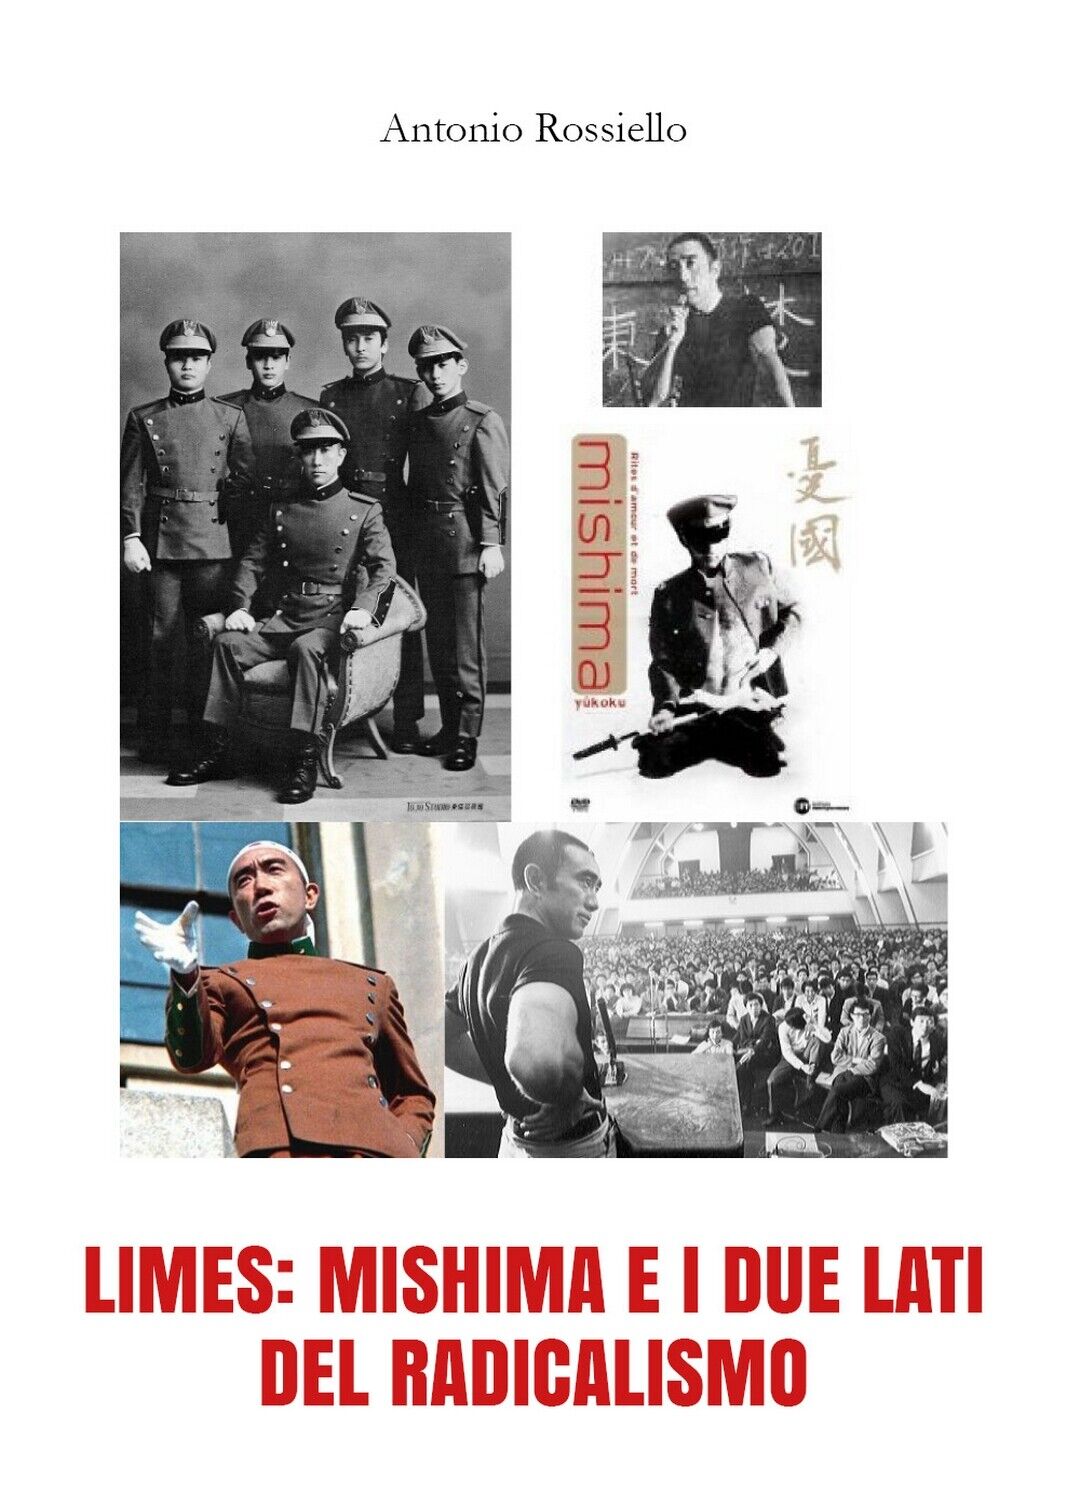 Limes: Mishima e i due lati del radicalismo  di Antonio Rossiello,  2018,  Youc.